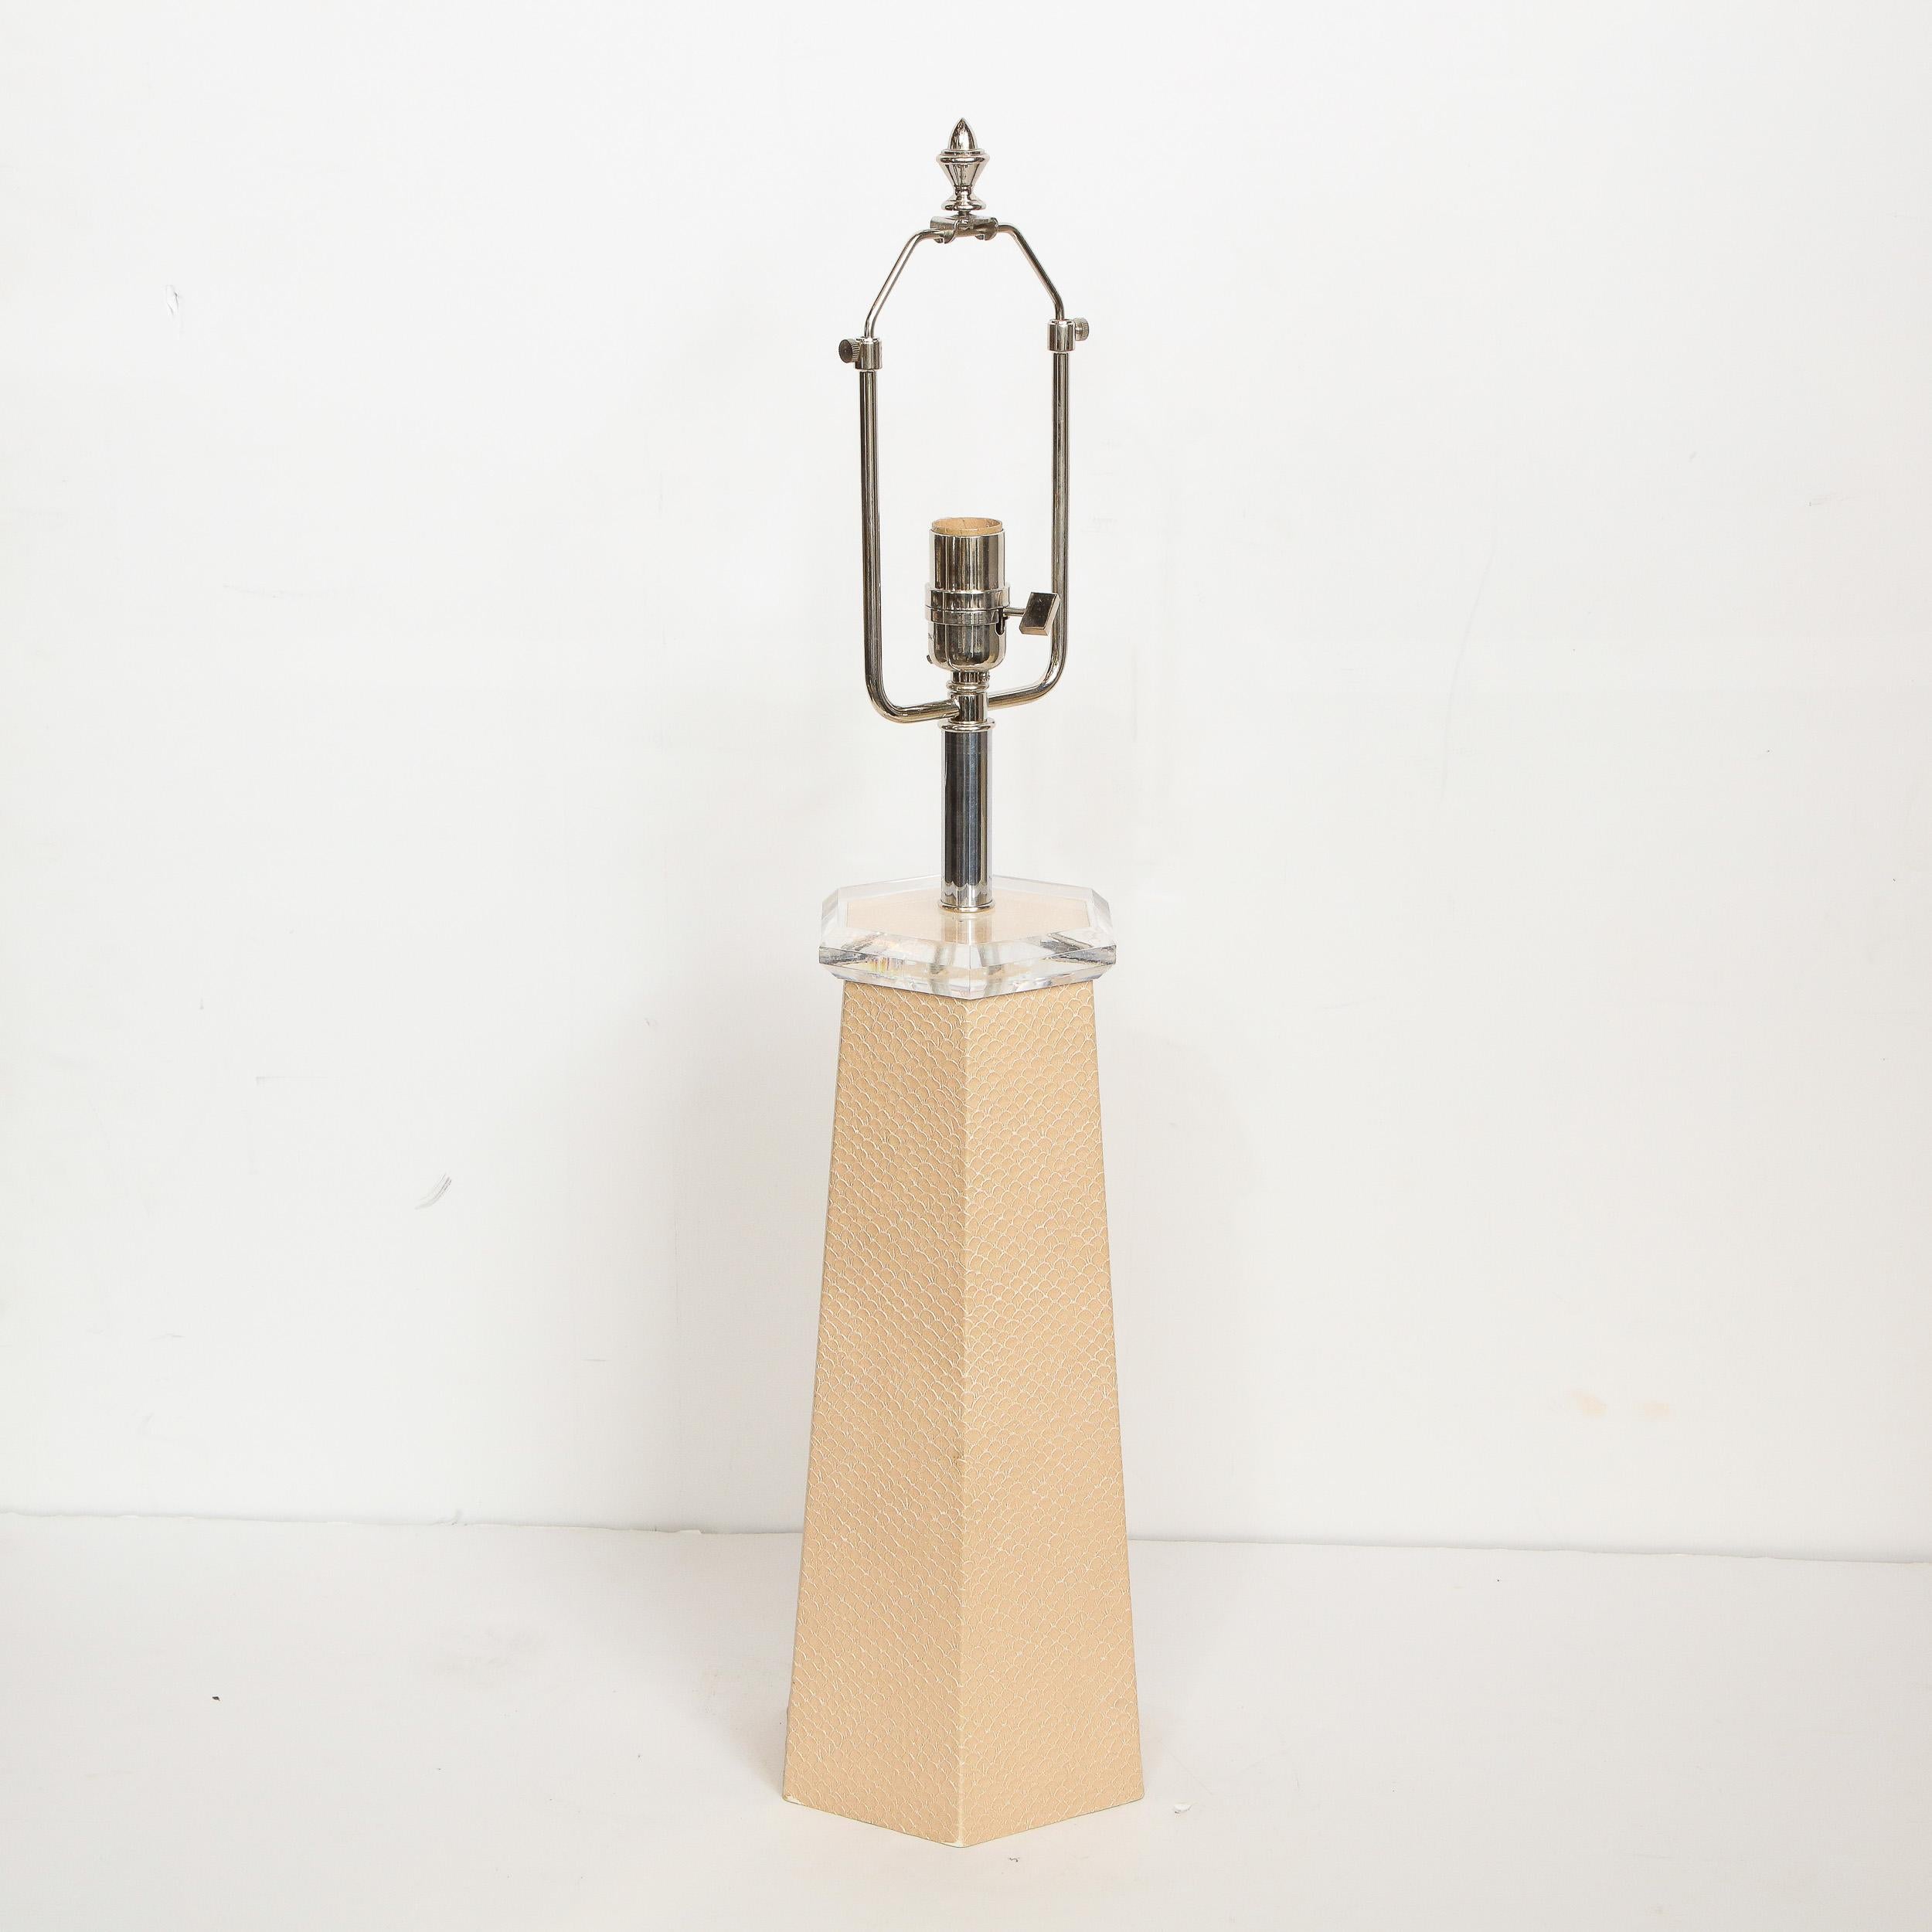 Animal Skin Signed Karl Springer Modernist Hexagonal Table Lamp in Beige Snakeskin